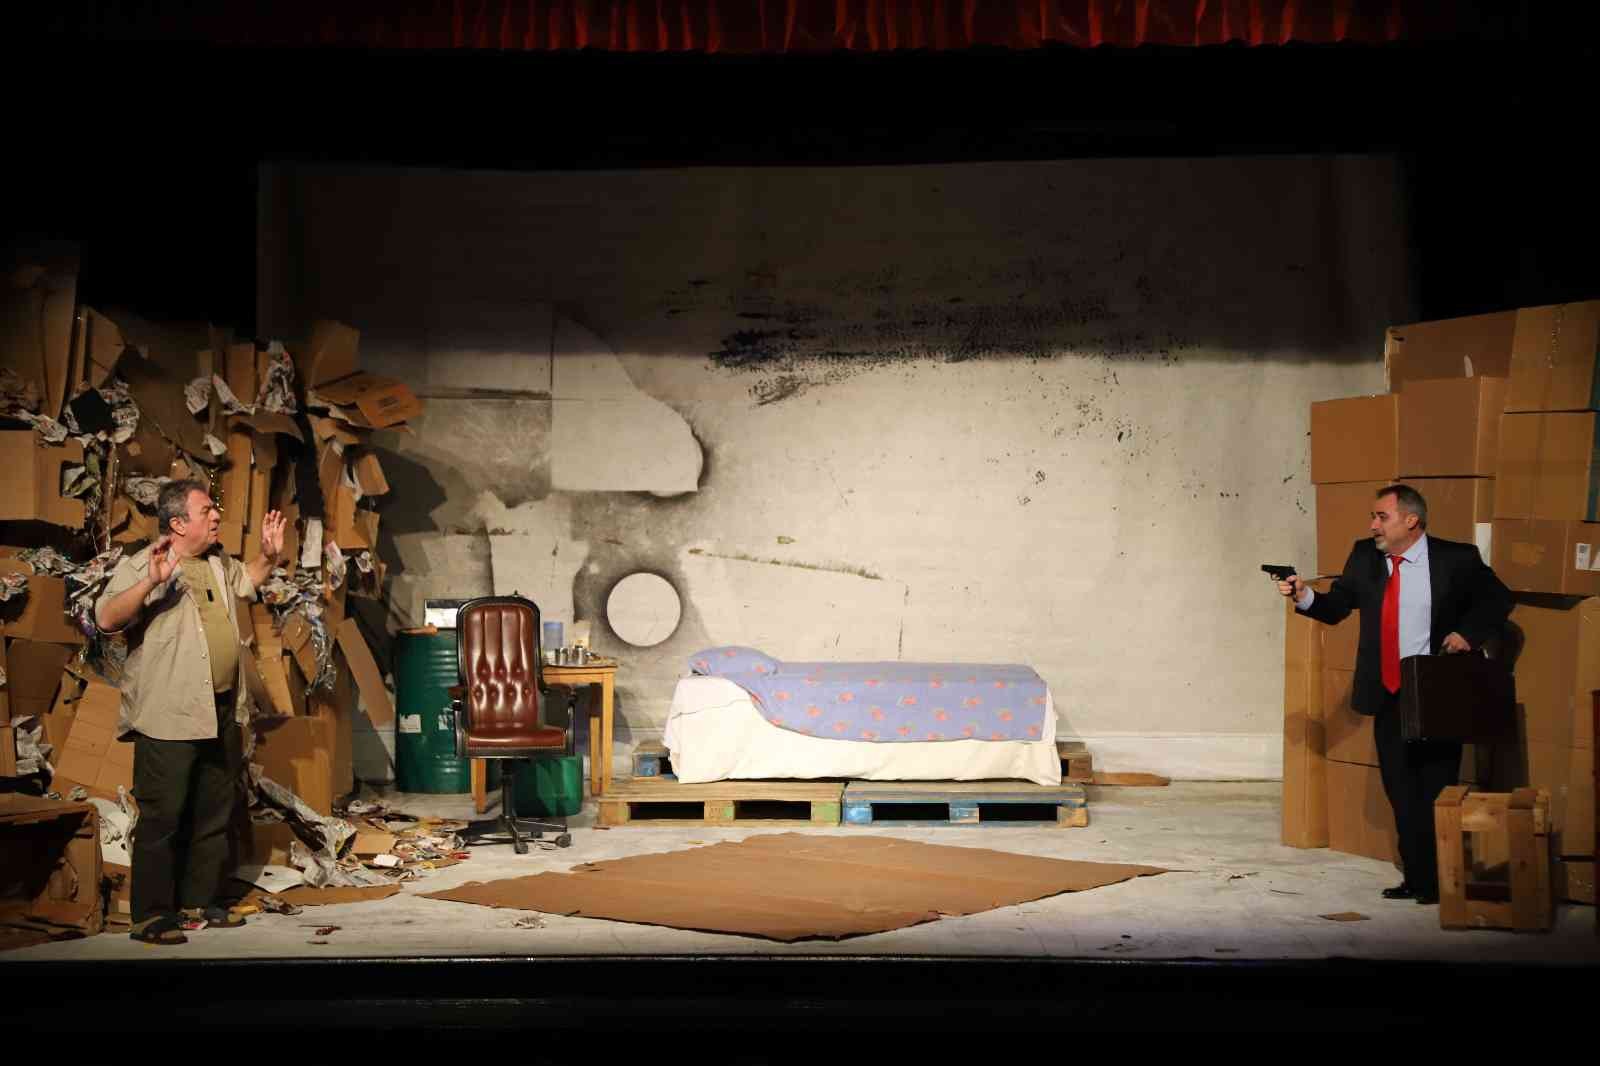 ‘Gece Boyunca’ adlı tiyatro oyunu Kartal’da sahnelendi #istanbul